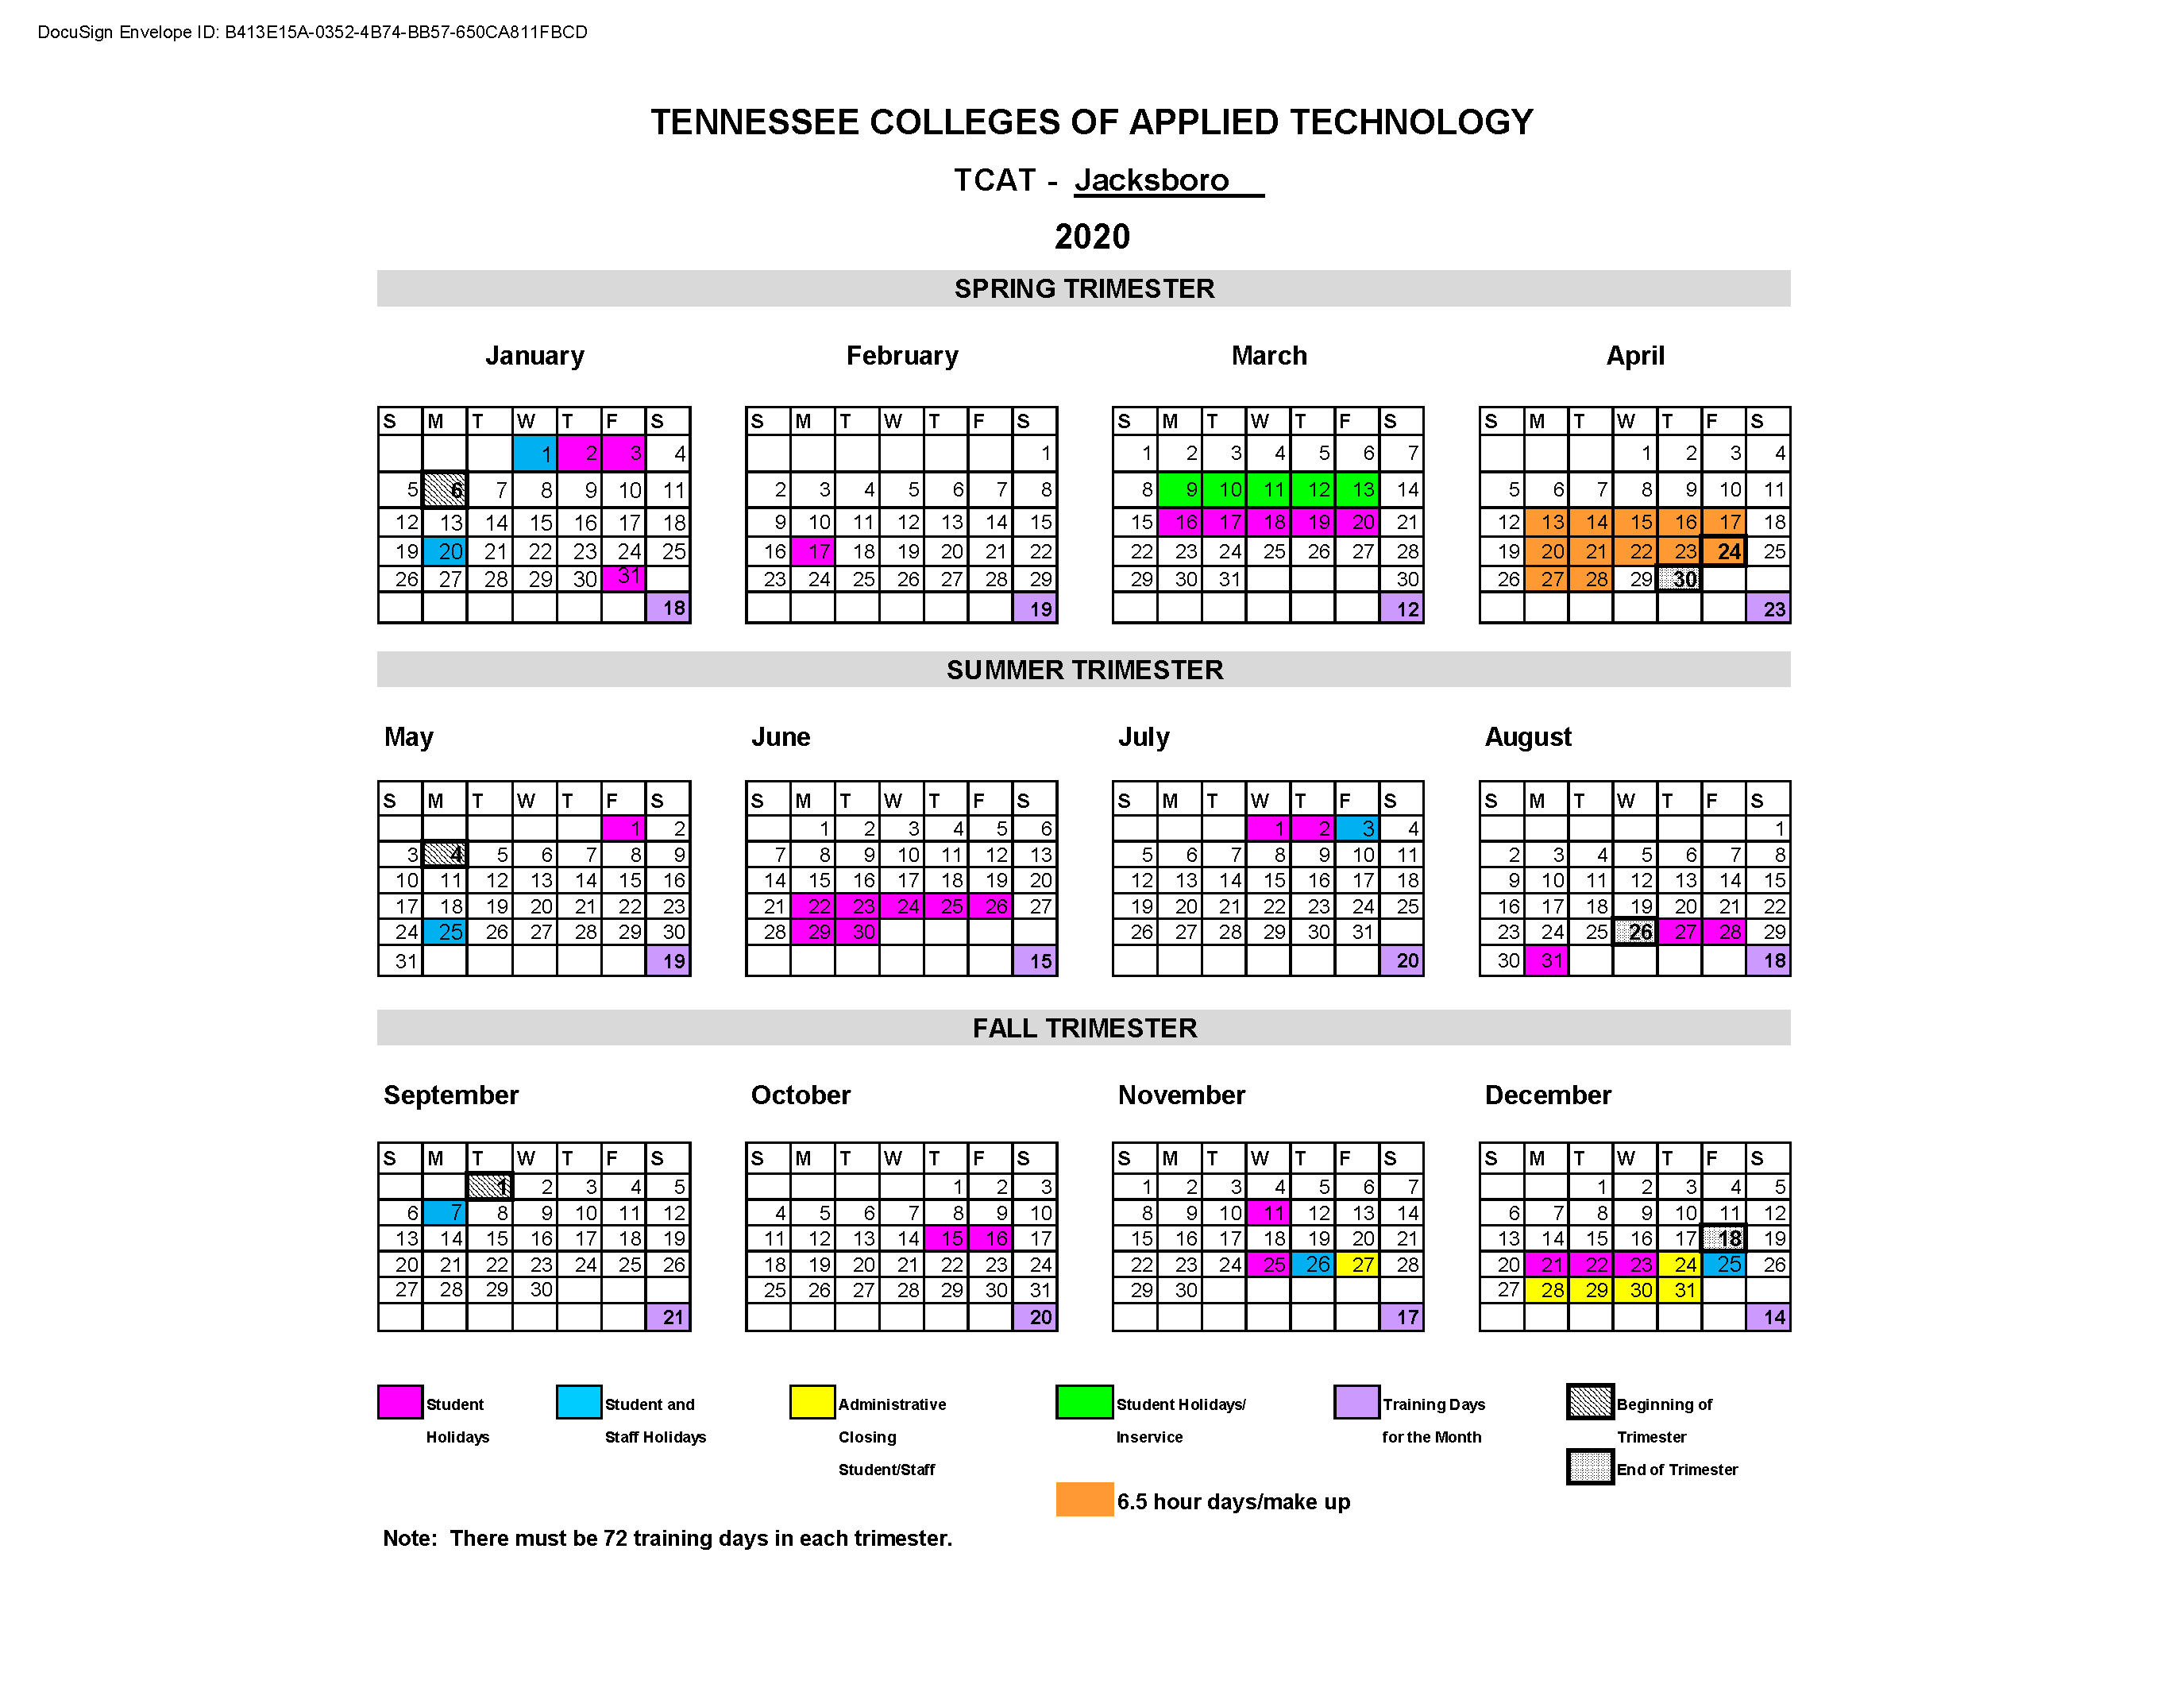 2020 Operating Calendar TCAT Jacksboro revised1 (1).png TCAT Jacksboro